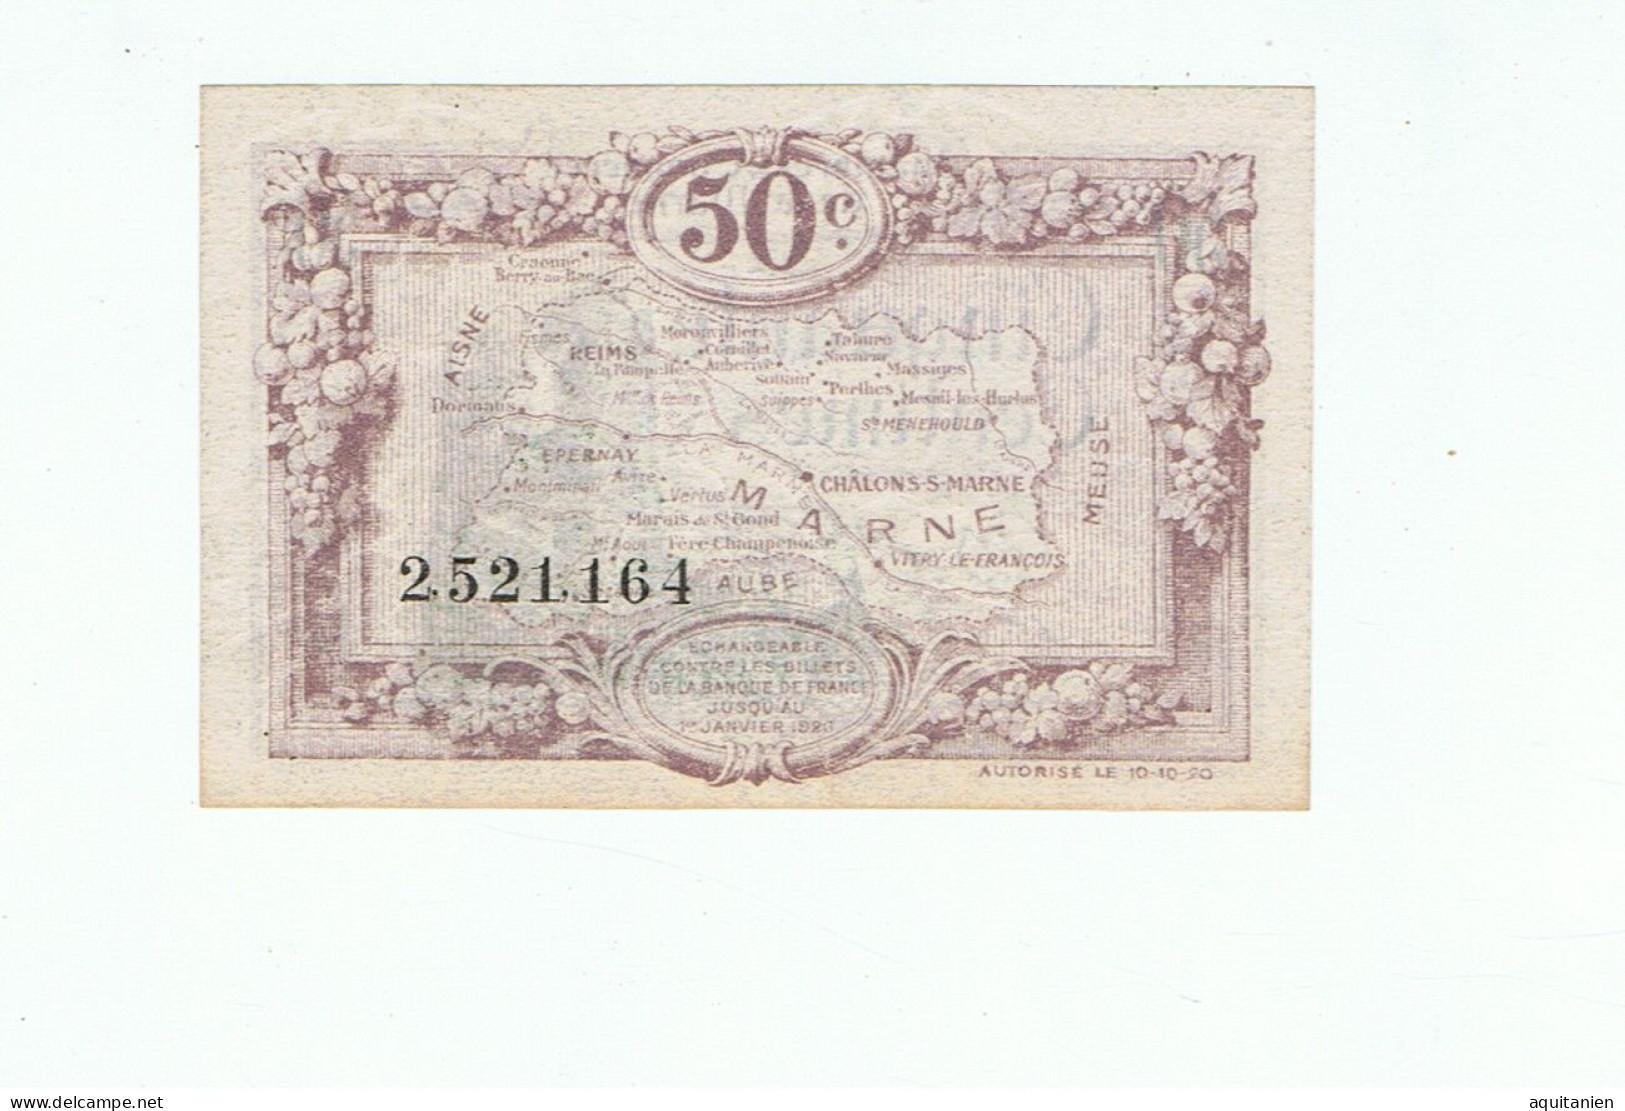 CC De La Marne-50 Cts-1920 - Chambre De Commerce